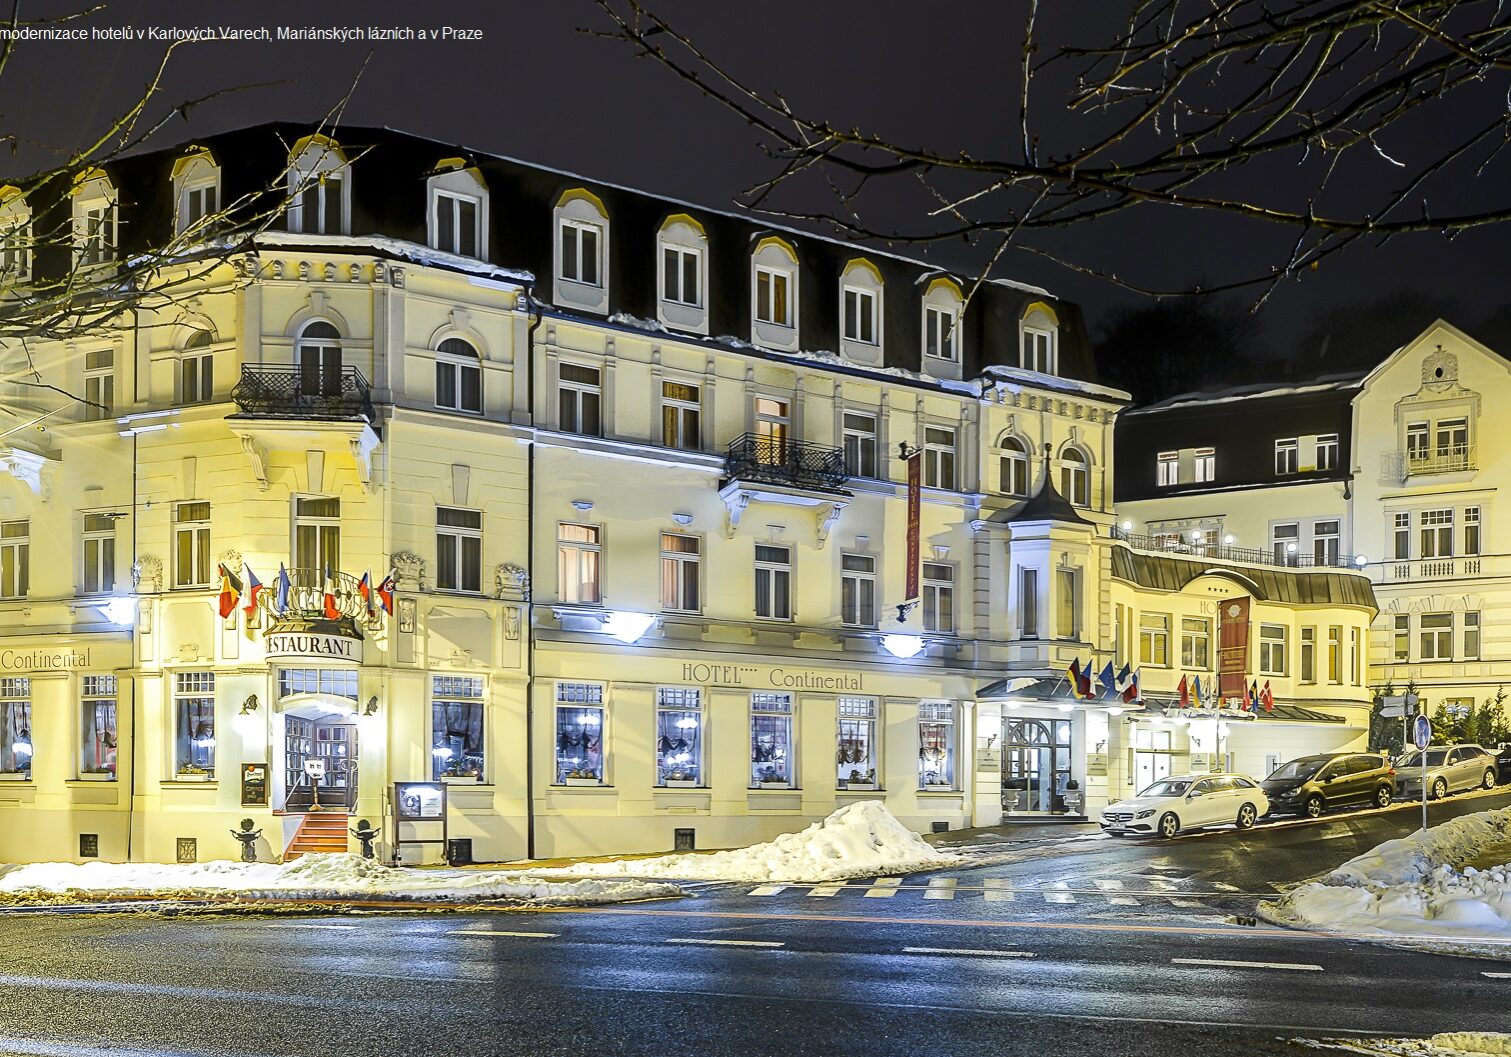 Rekonstrukce a modernizace hotelů v Karlových Varech, Mariánských lázních a v Praze